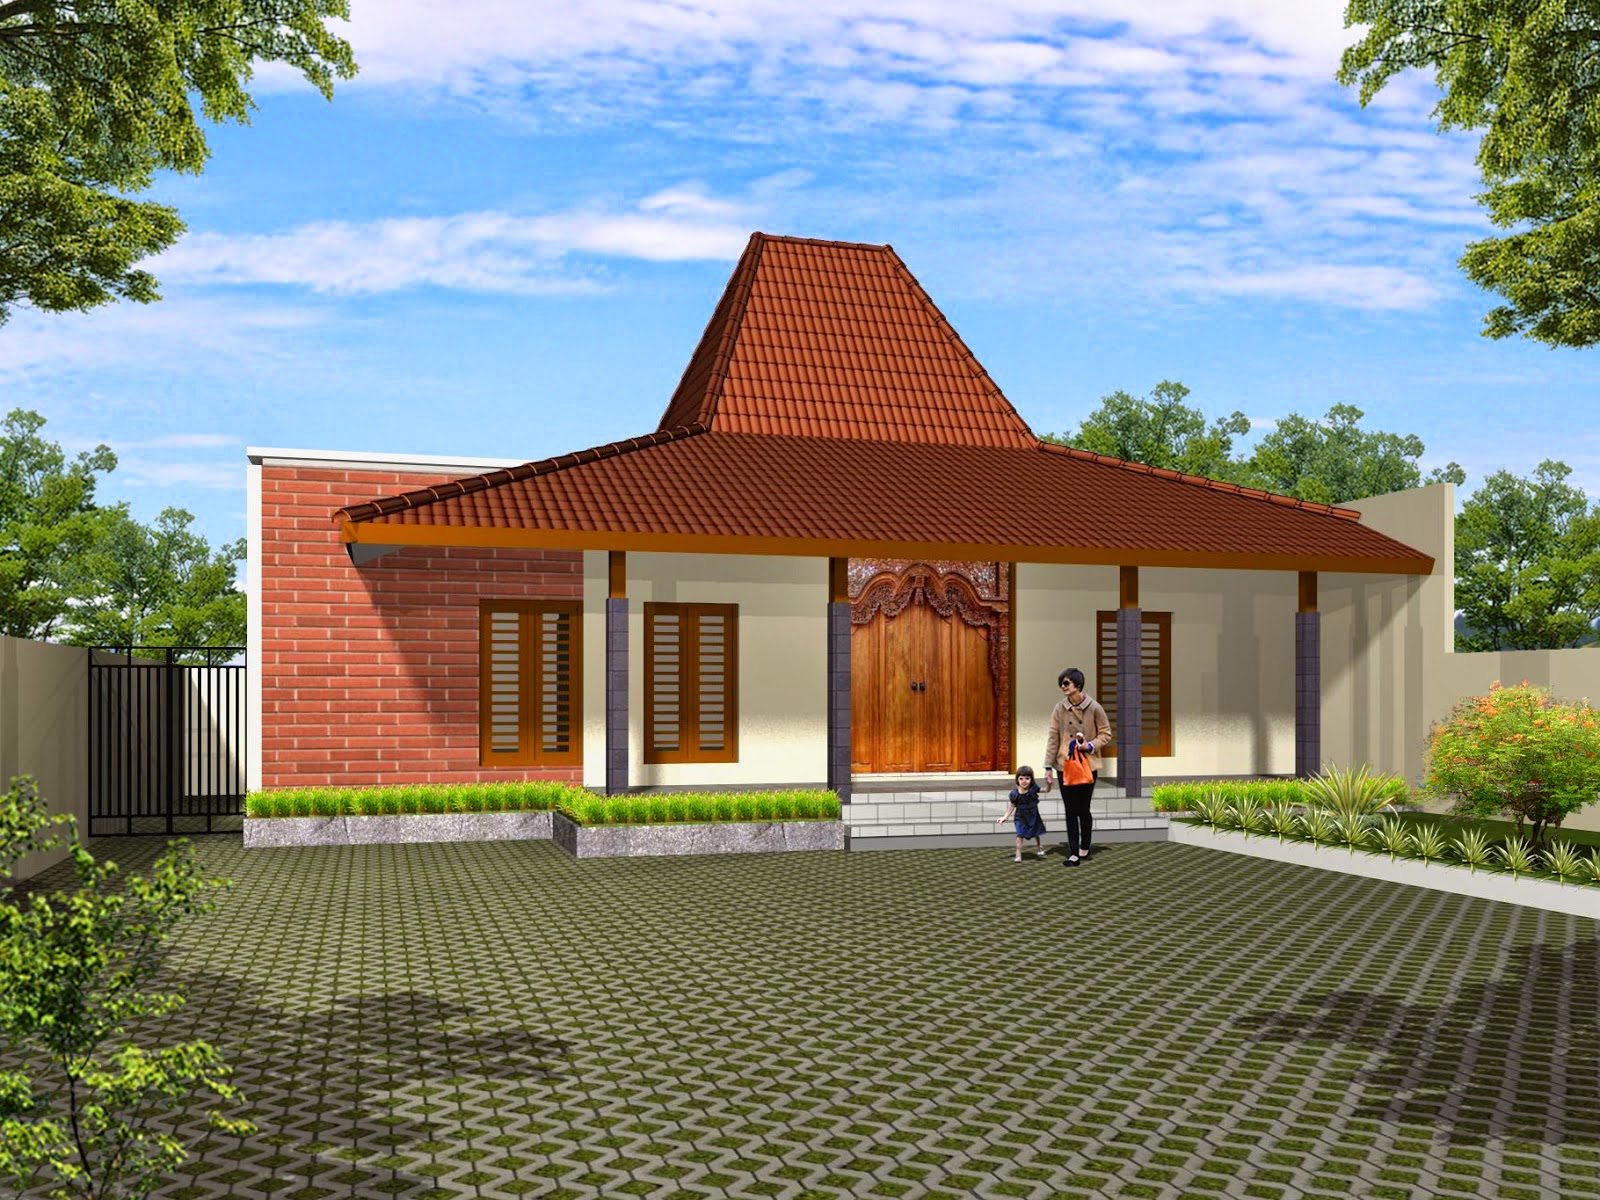 70 Desain Rumah Minimalis Jawa Timur Desain Rumah Minimalis Terbaru